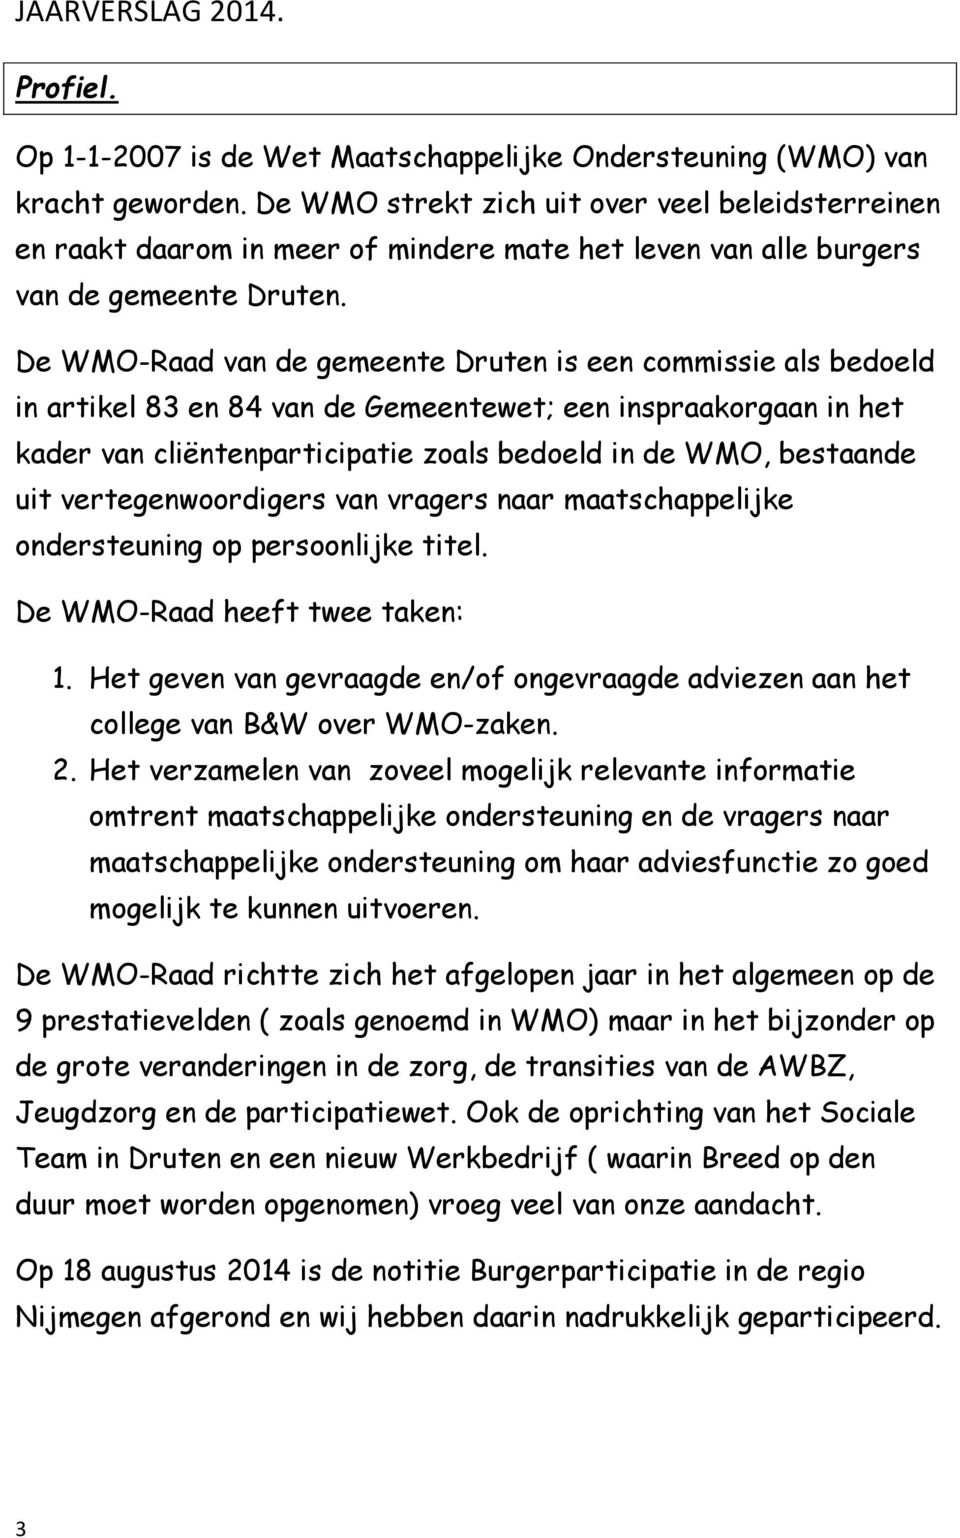 De WMO-Raad van de gemeente Druten is een commissie als bedoeld in artikel 83 en 84 van de Gemeentewet; een inspraakorgaan in het kader van cliëntenparticipatie zoals bedoeld in de WMO, bestaande uit